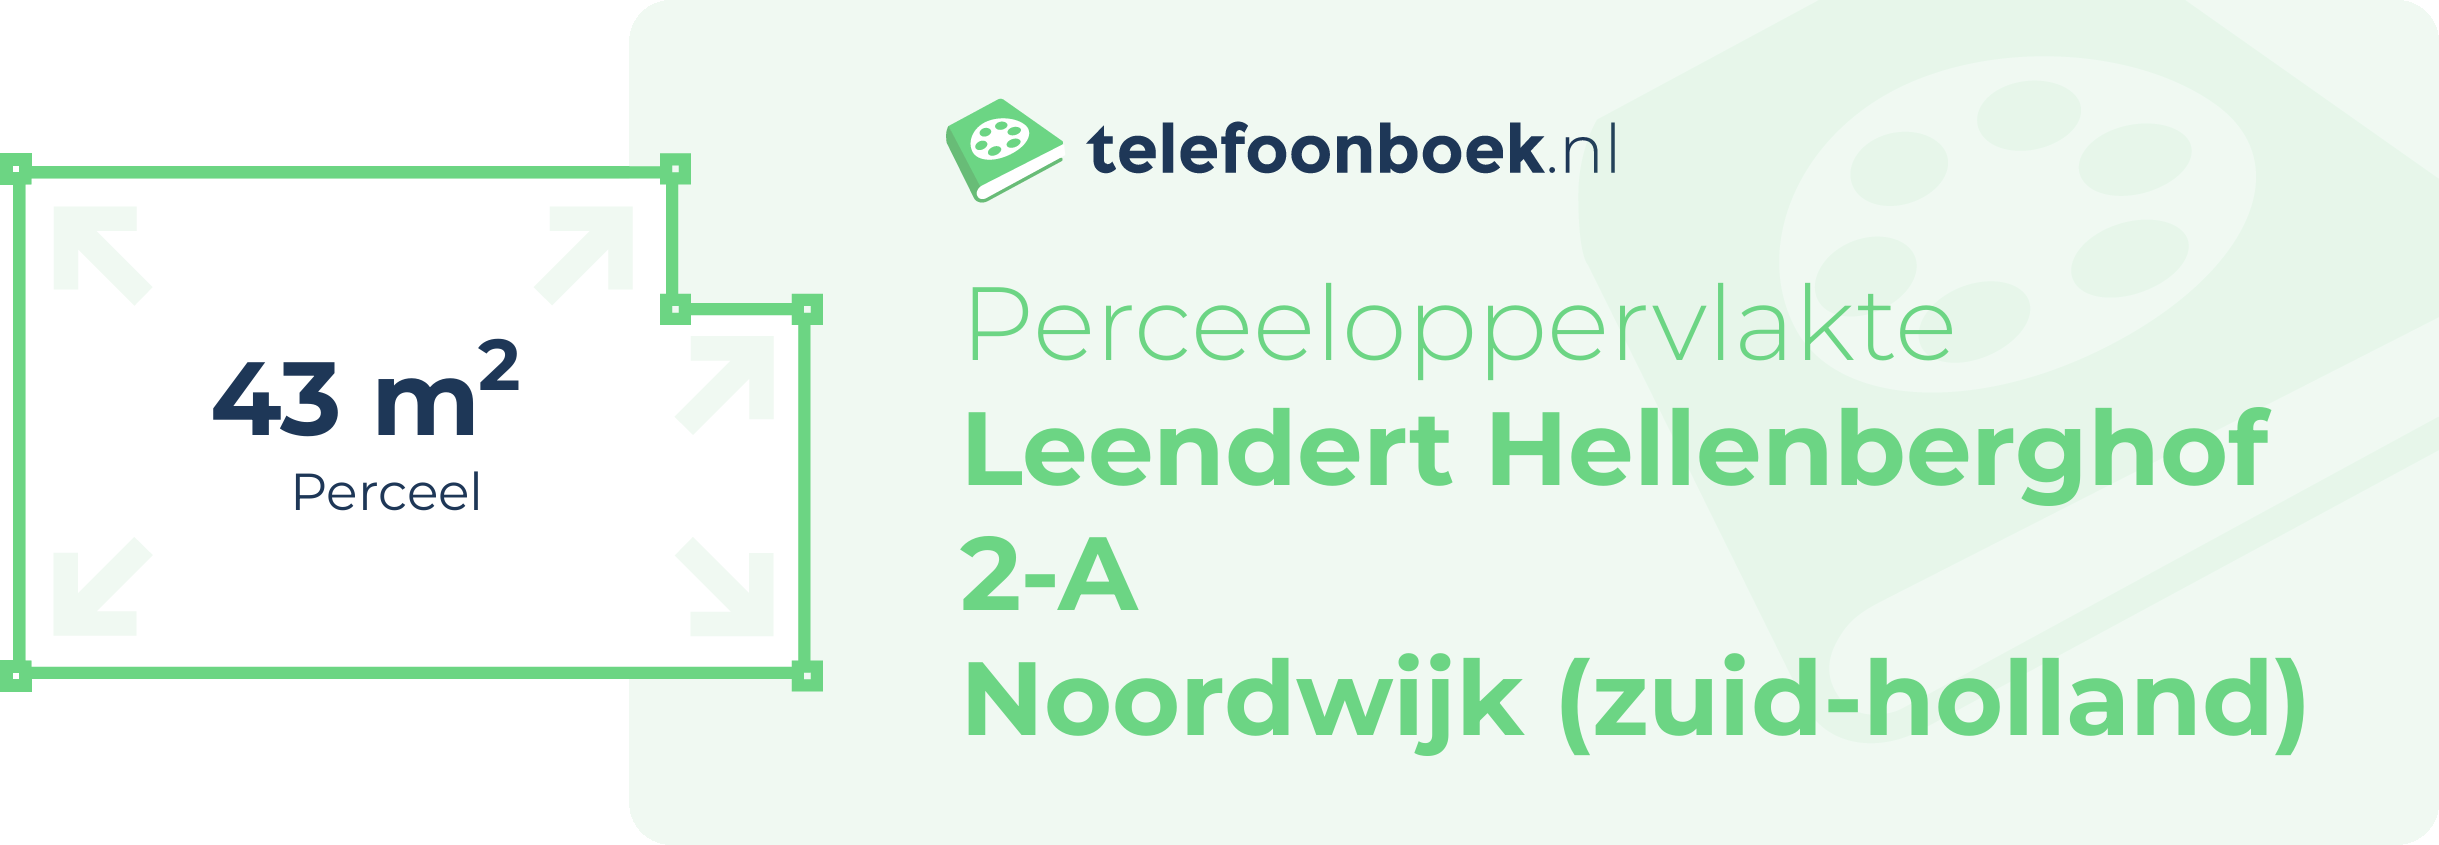 Perceeloppervlakte Leendert Hellenberghof 2-A Noordwijk (Zuid-Holland)